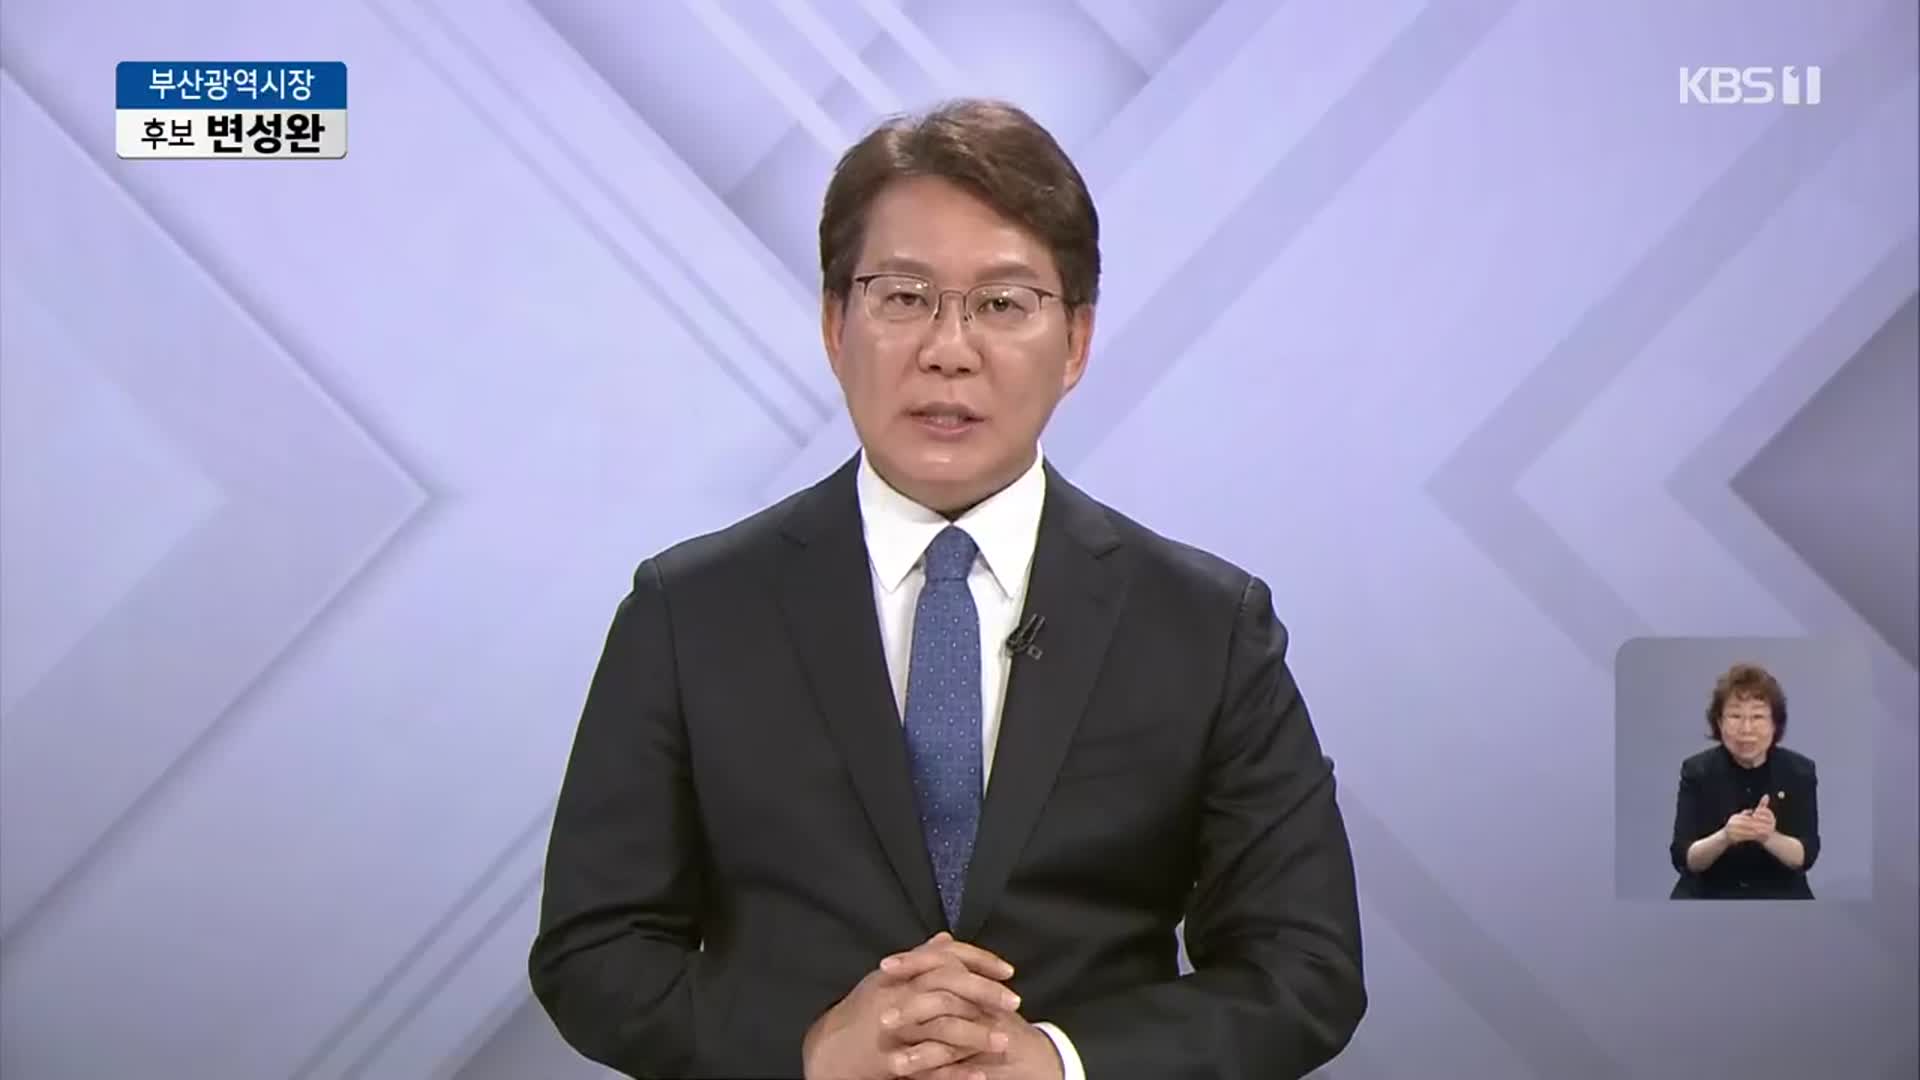 [풀영상] 2022지방선거 방송연설 - 변성완 부산광역시장 후보